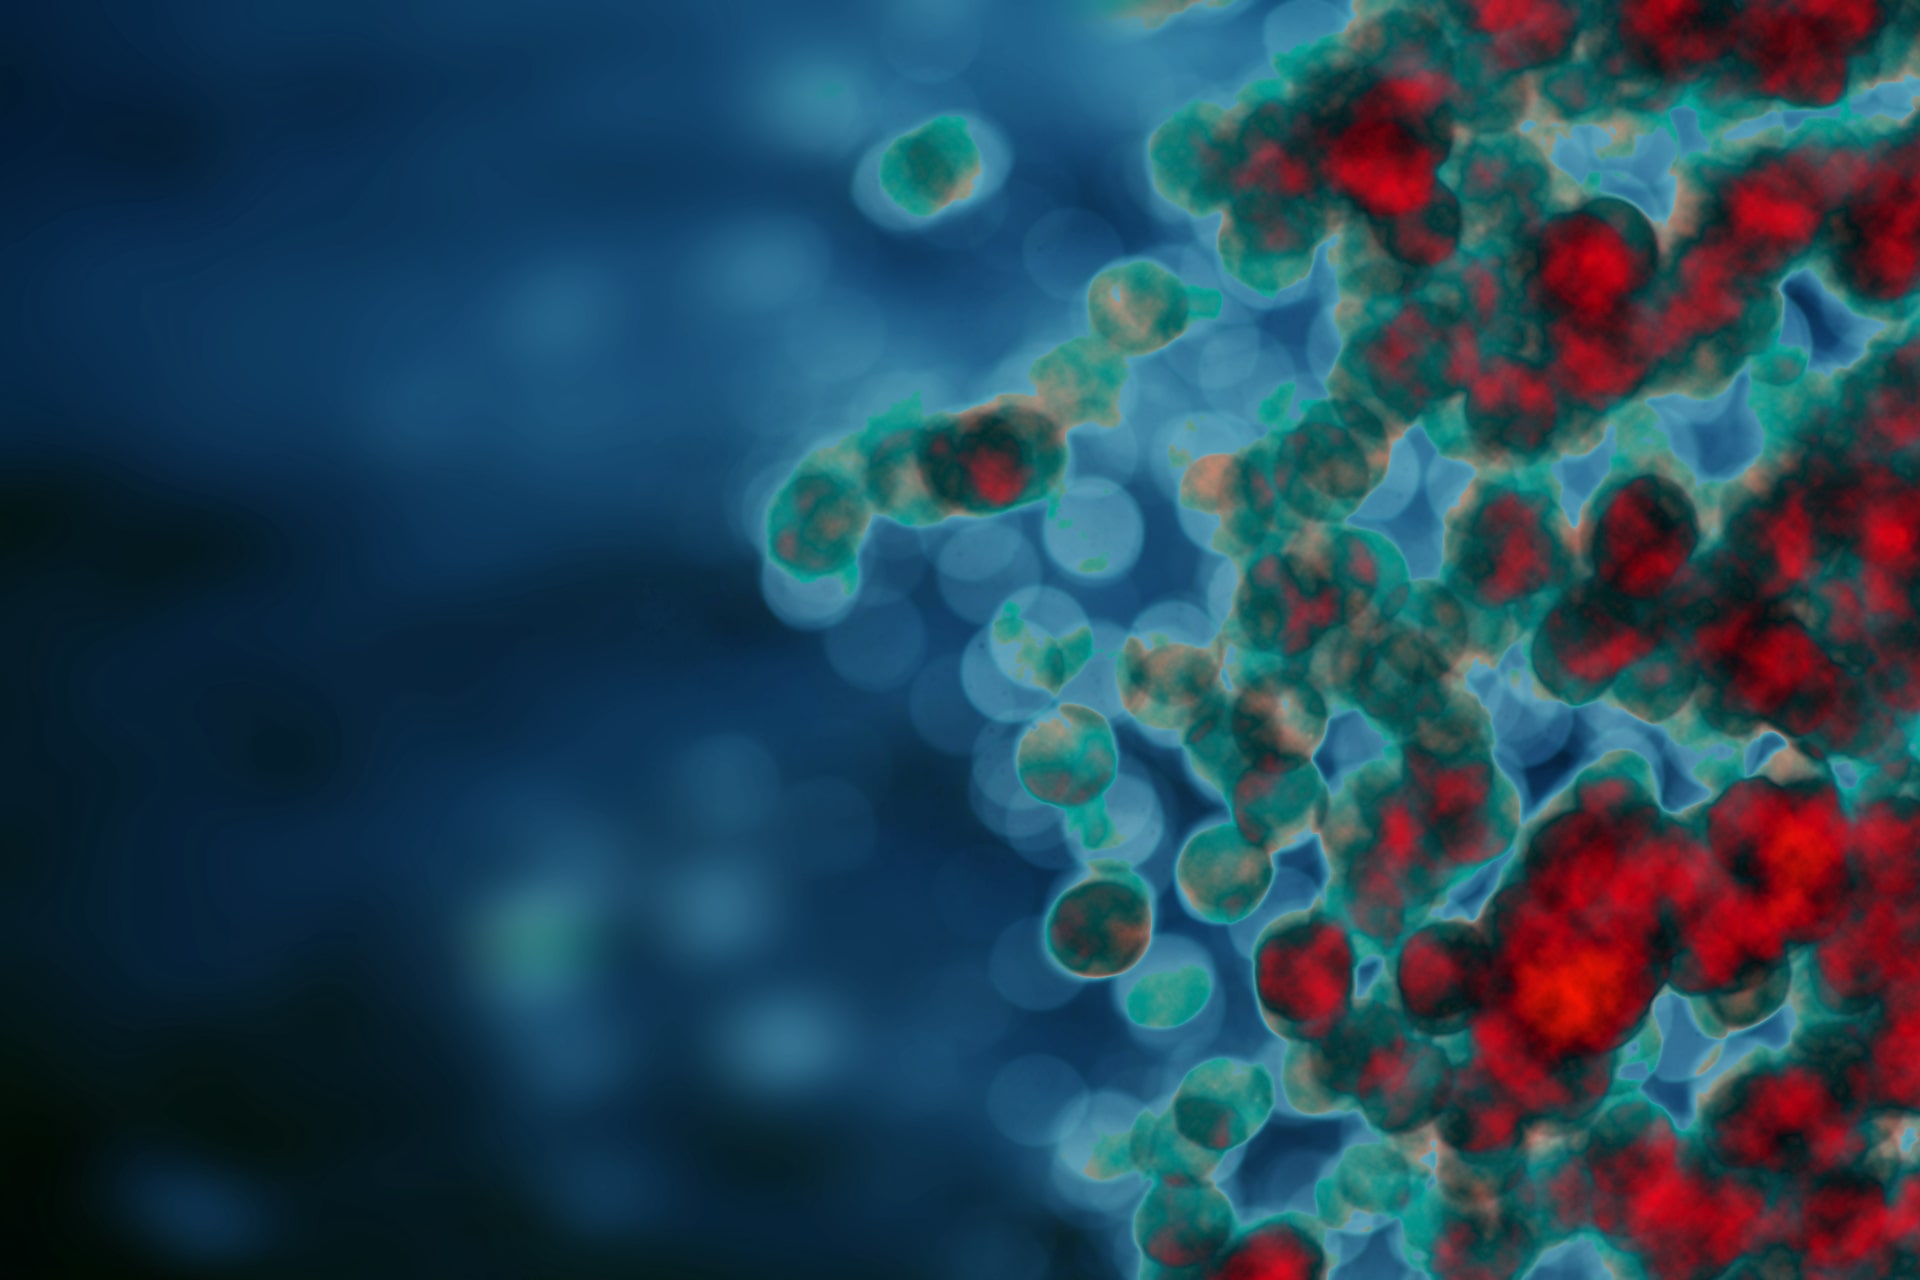 Mikroskopische Ansicht von mit fluoreszierendem Farbstoff hervorgehobenen Zellen, die die Erneuerung des Immunsystems zeigen.